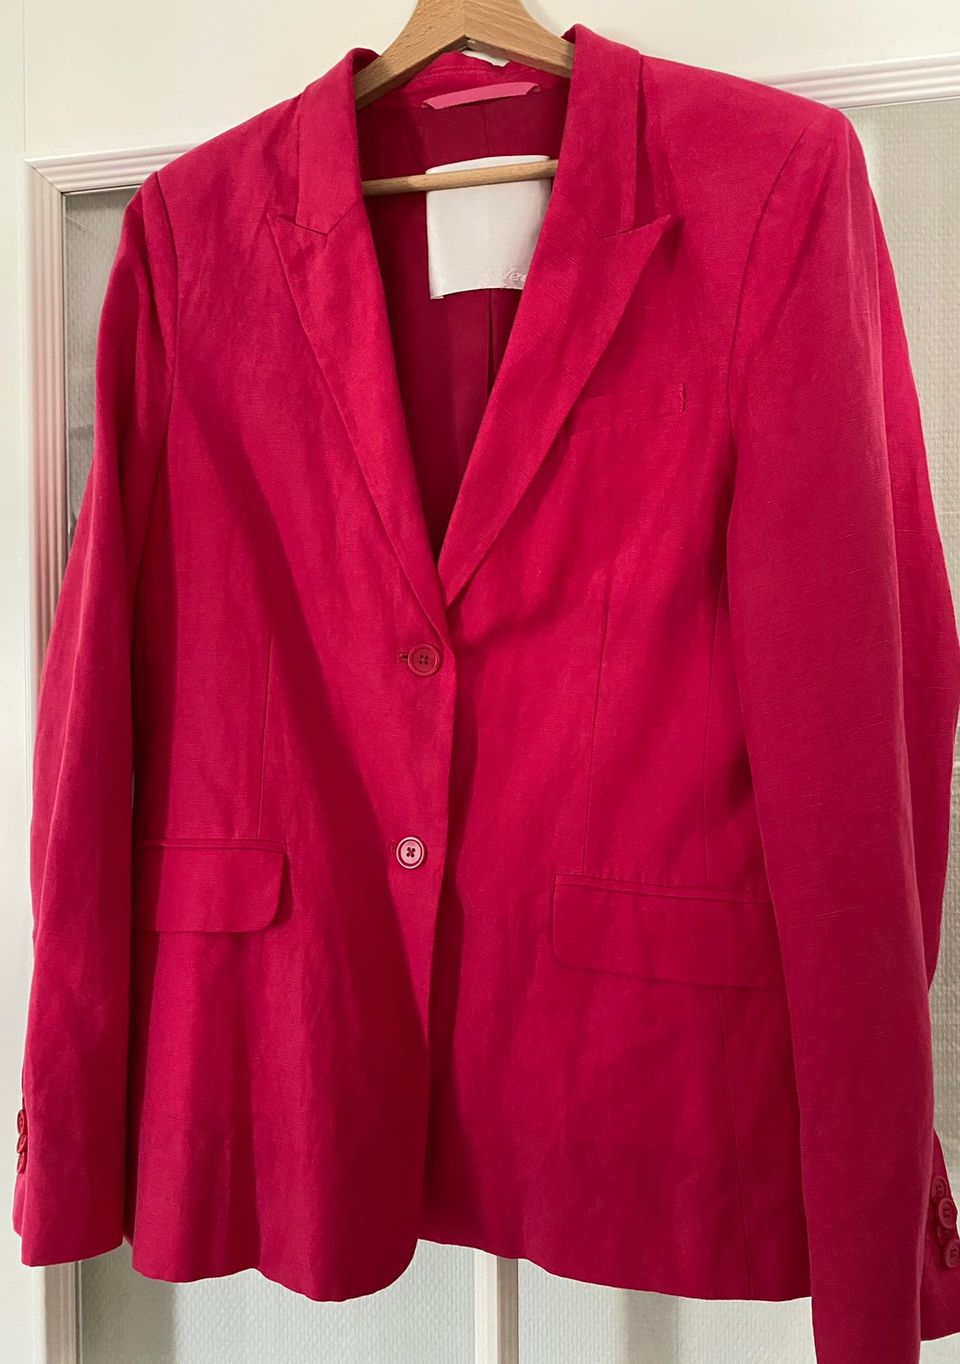 Inwear pinkki jakku, koko n. 40